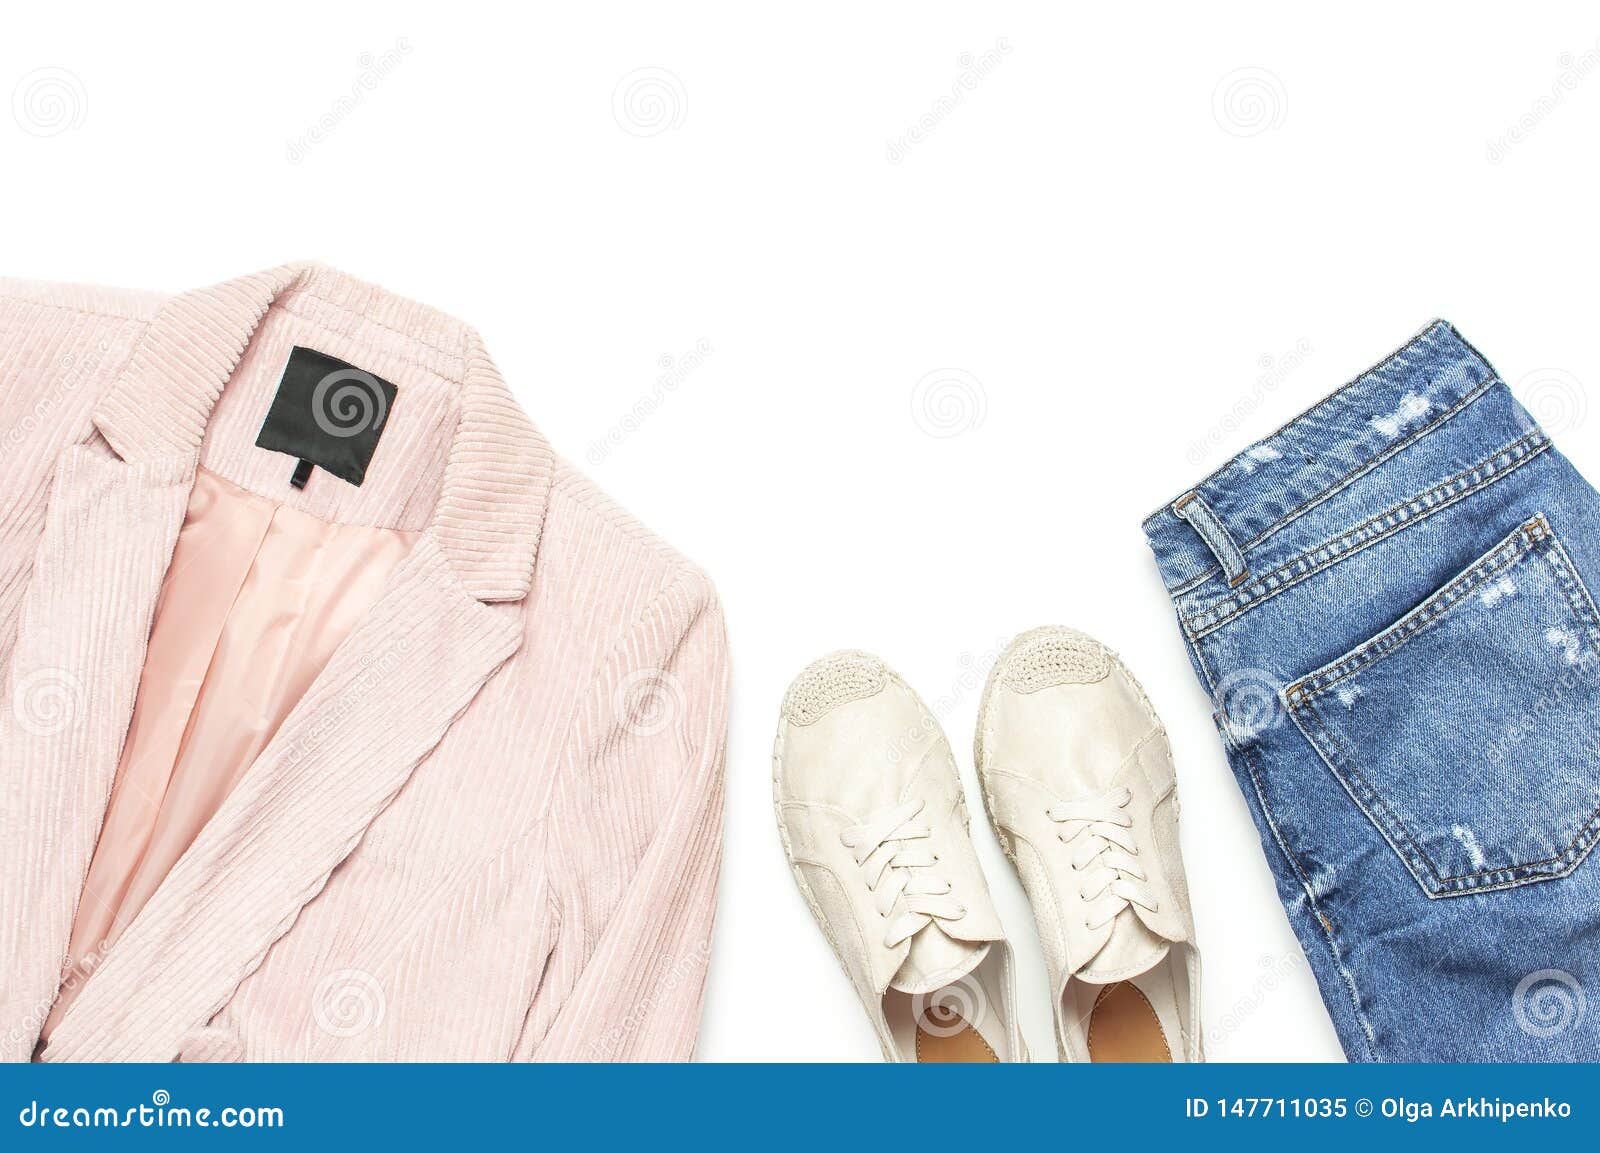 Stylish Feminine Spring Clothing White Shirt, Blue Jeans, Pink Corduroy ...